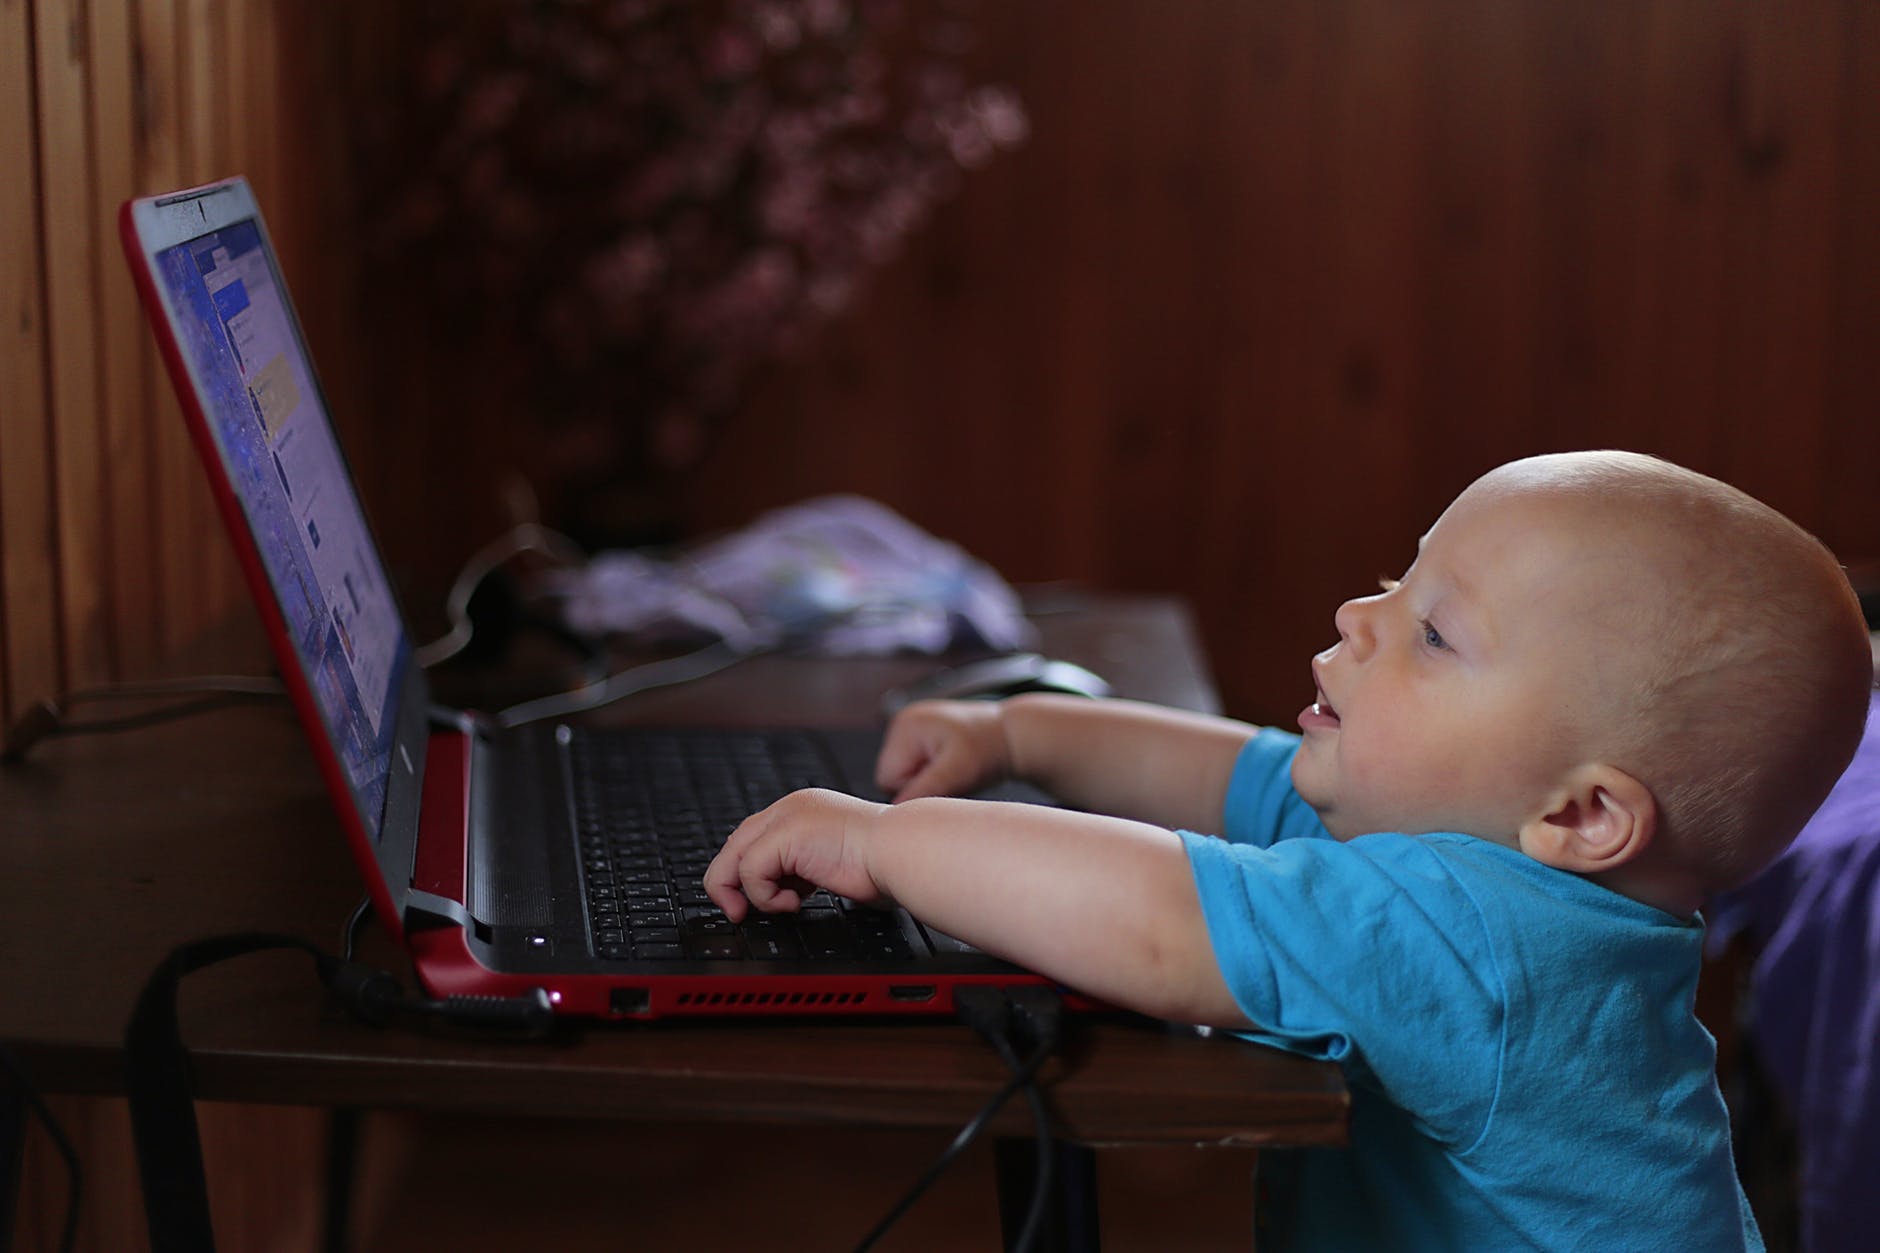 Internet safety tips for kids